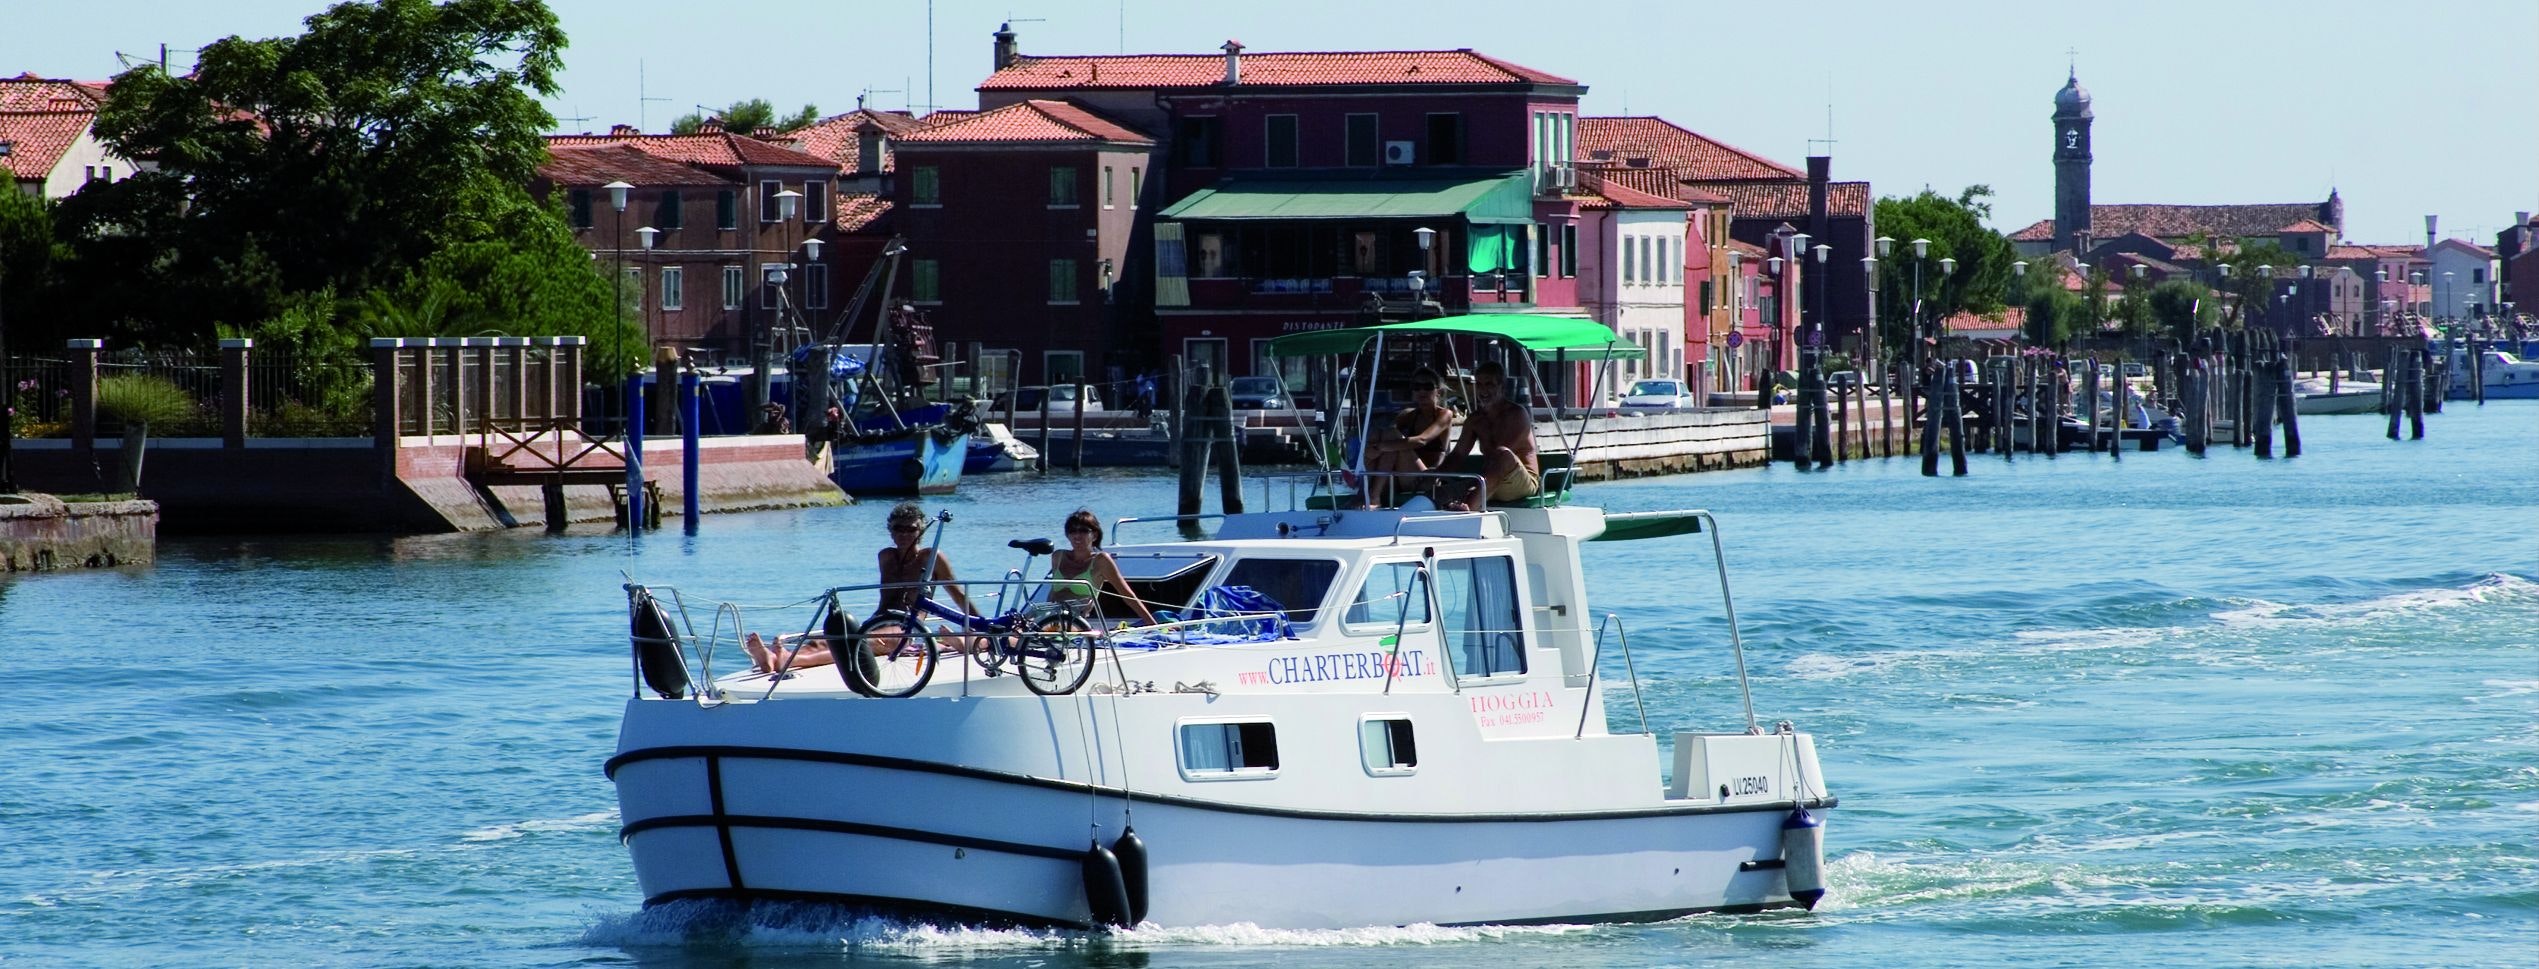 Folk om bord i en husbåt i den venetianske lagunen